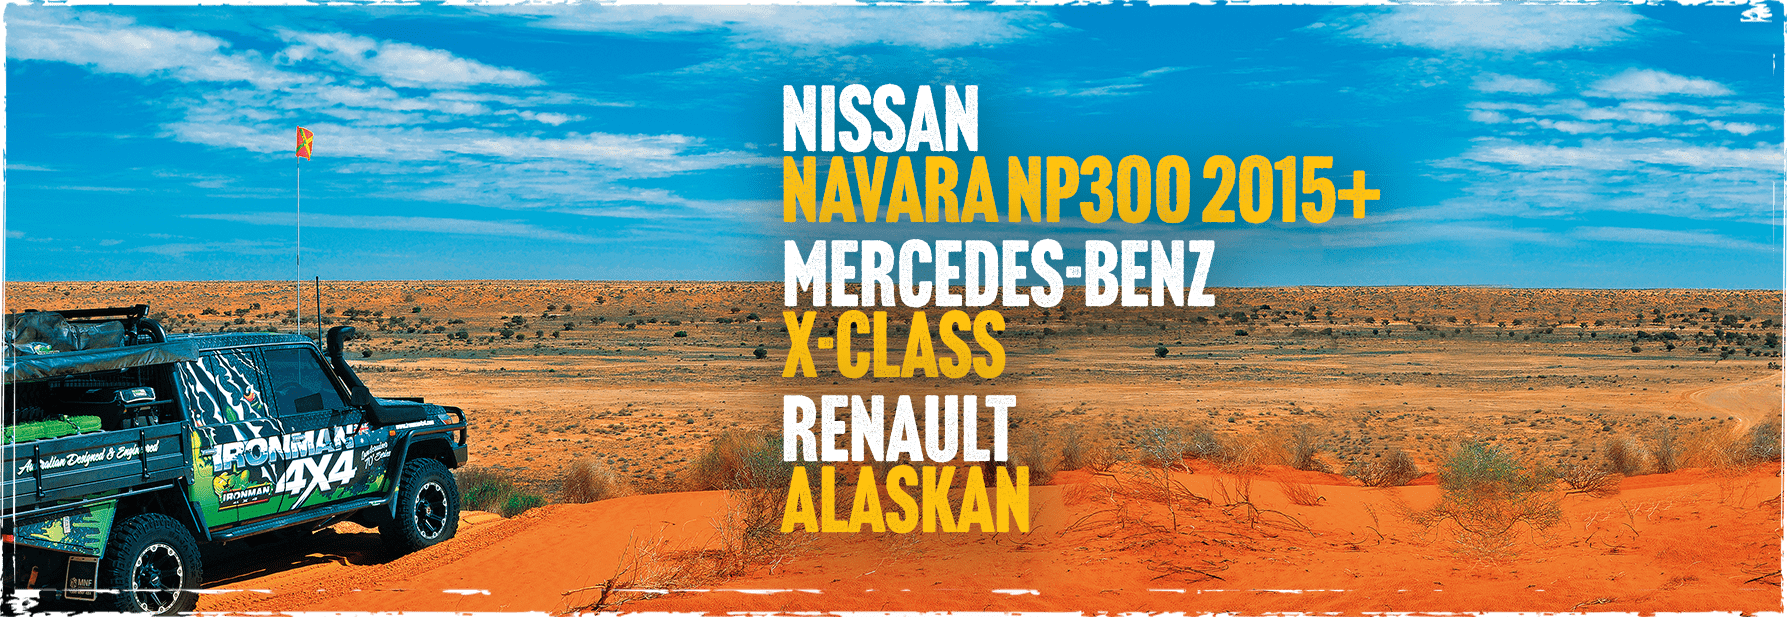 Fahrwerk für Nissan Navara NP300 2015+ / Mercedes-Benz X-Klasse / Renault  Alaskan mit ABE und Höherlegung - Genesis Import